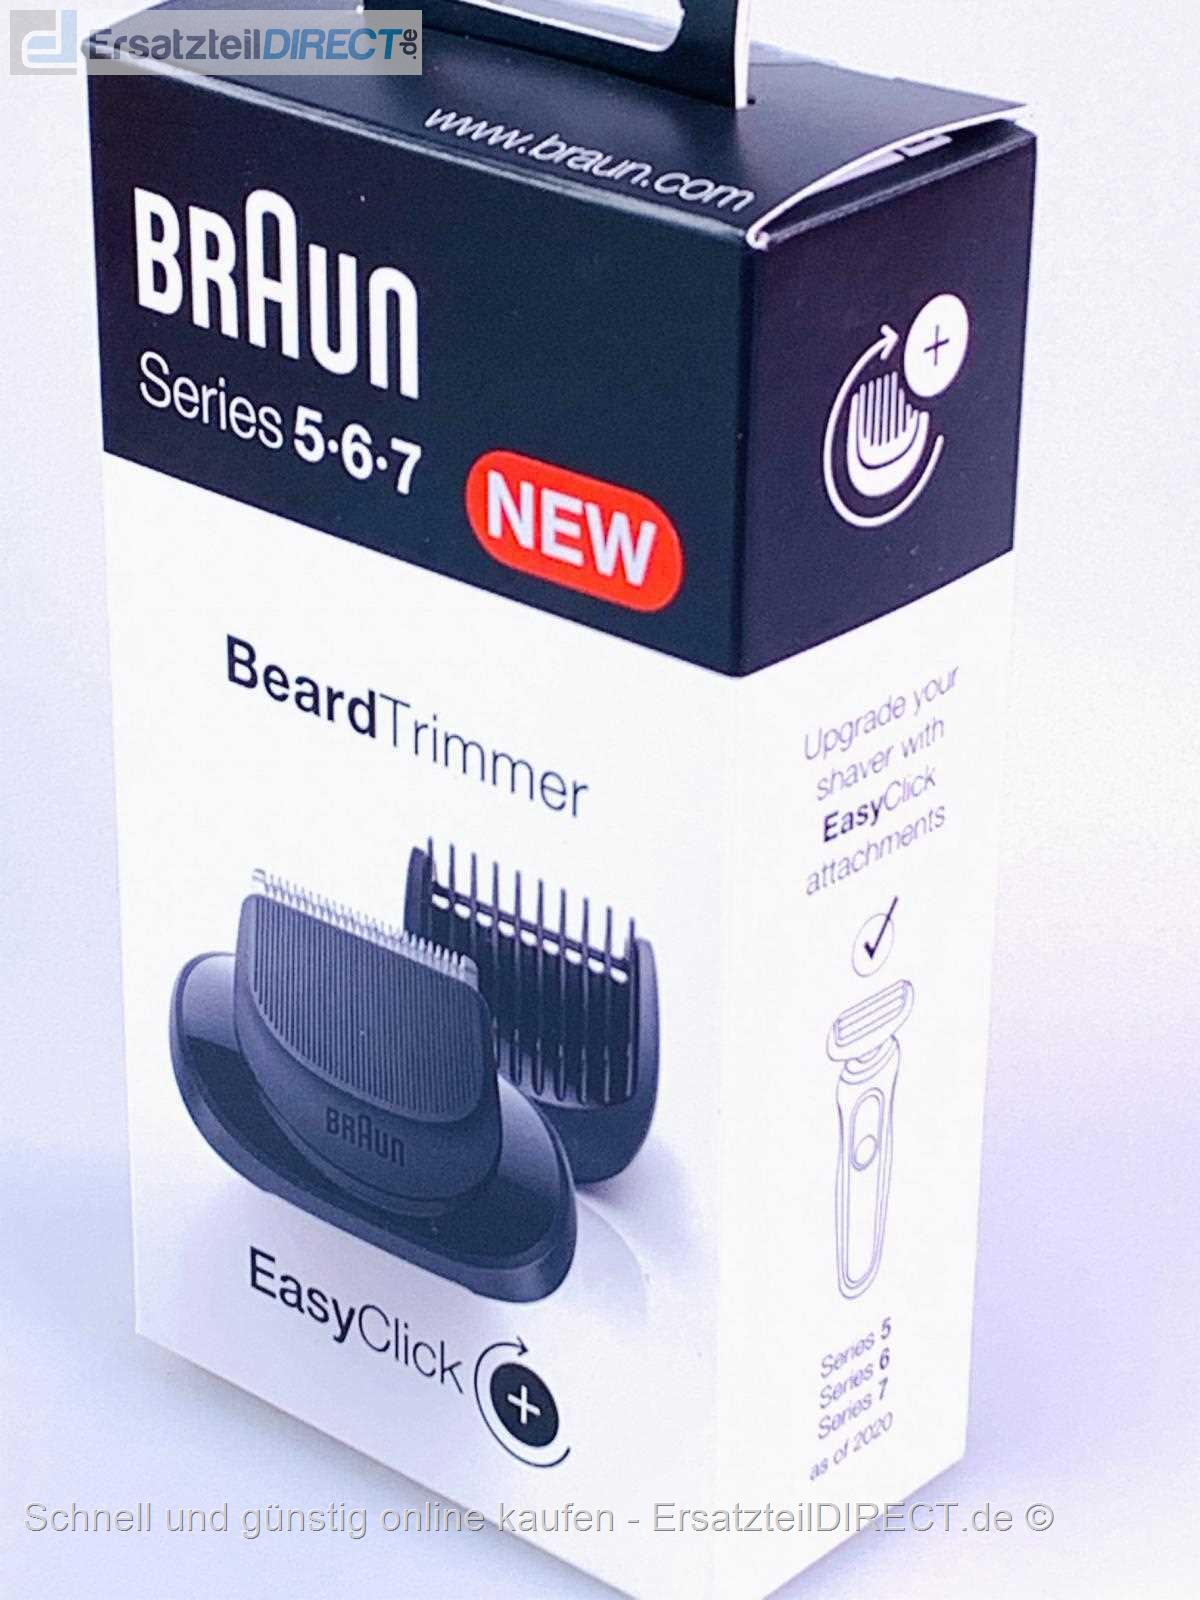 Braun Rasierer EasyKlick-Aufsatz Barttrimmer S5-S7 bei 4210201344841 kaufen günstig 81739347 81697117